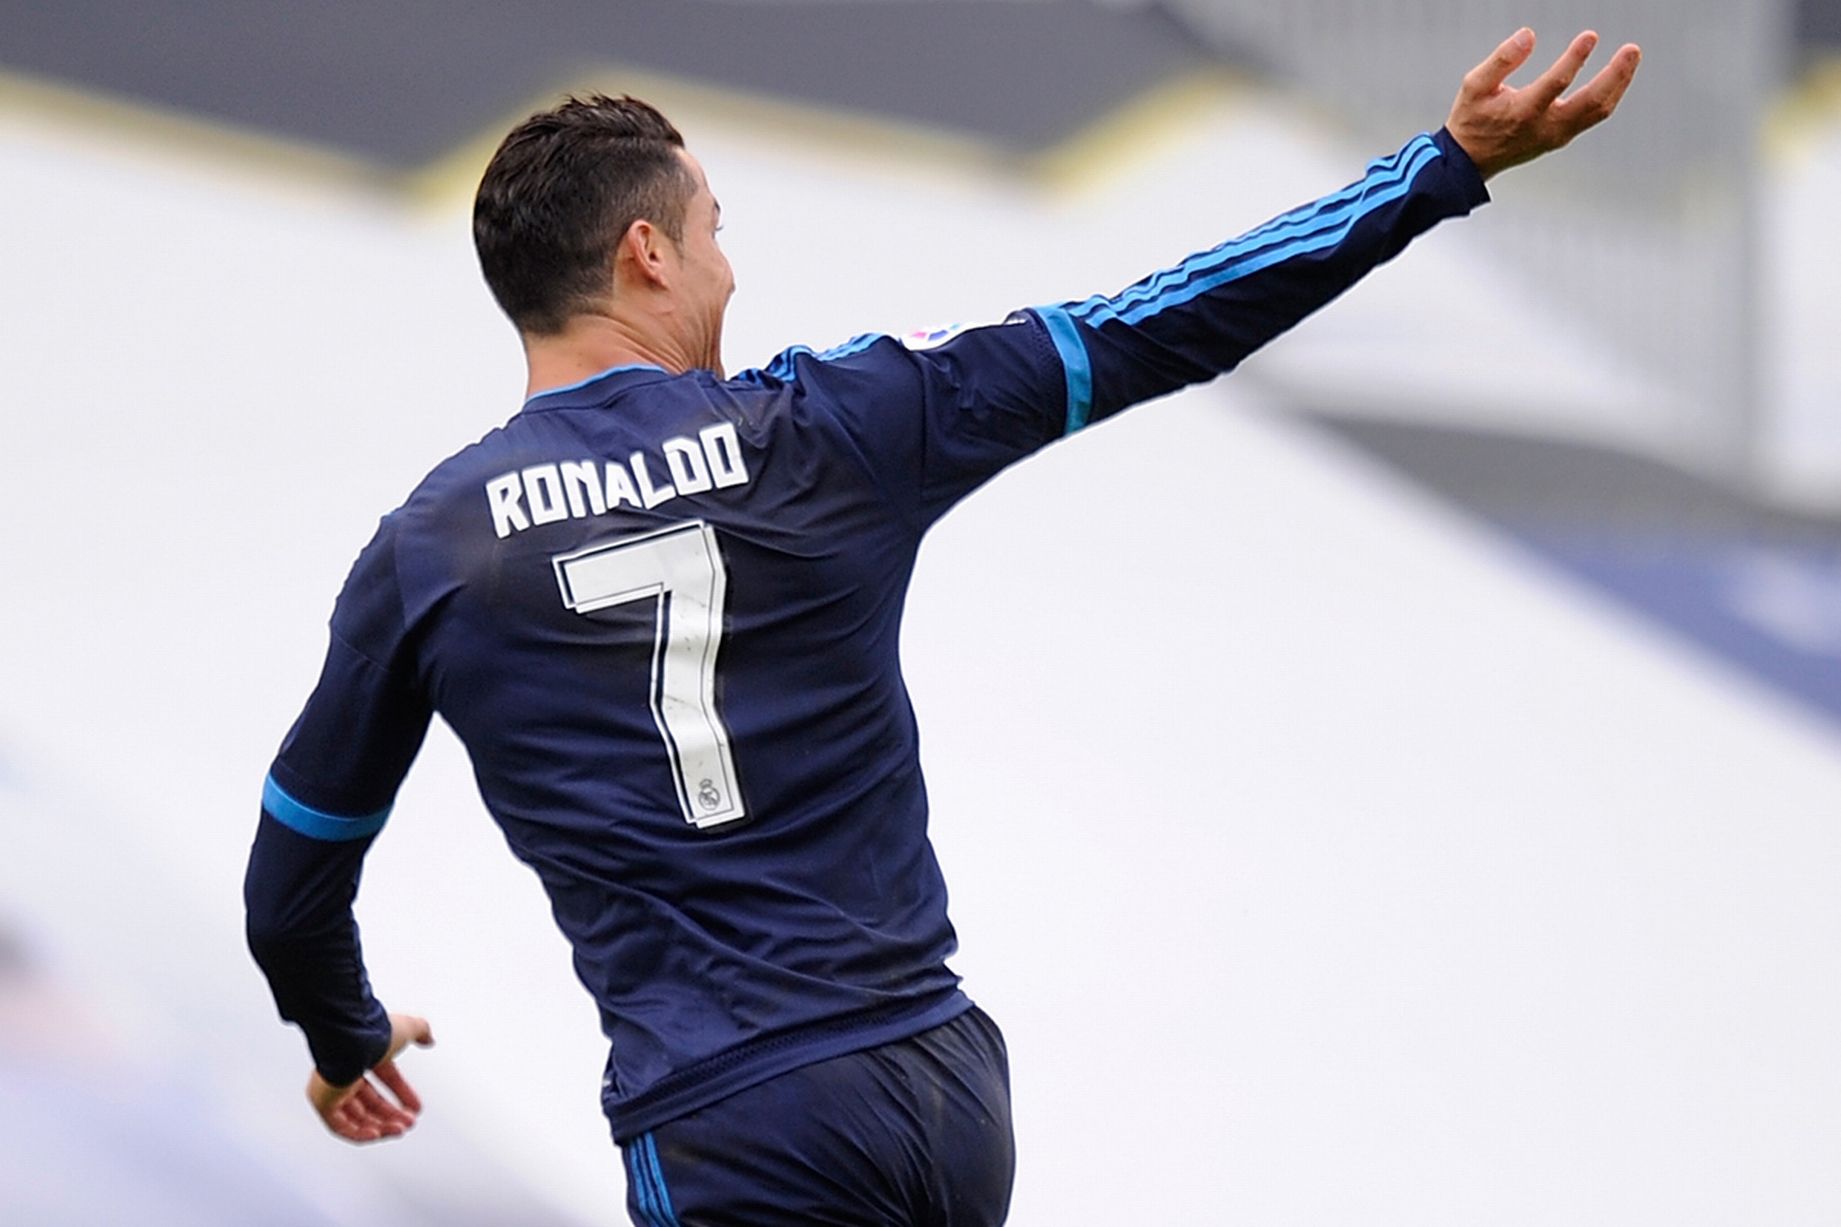 کاپلو: رونالدو می تواند تا 3سال آینده به فوتبال در سطح حرفه ای ادامه دهد